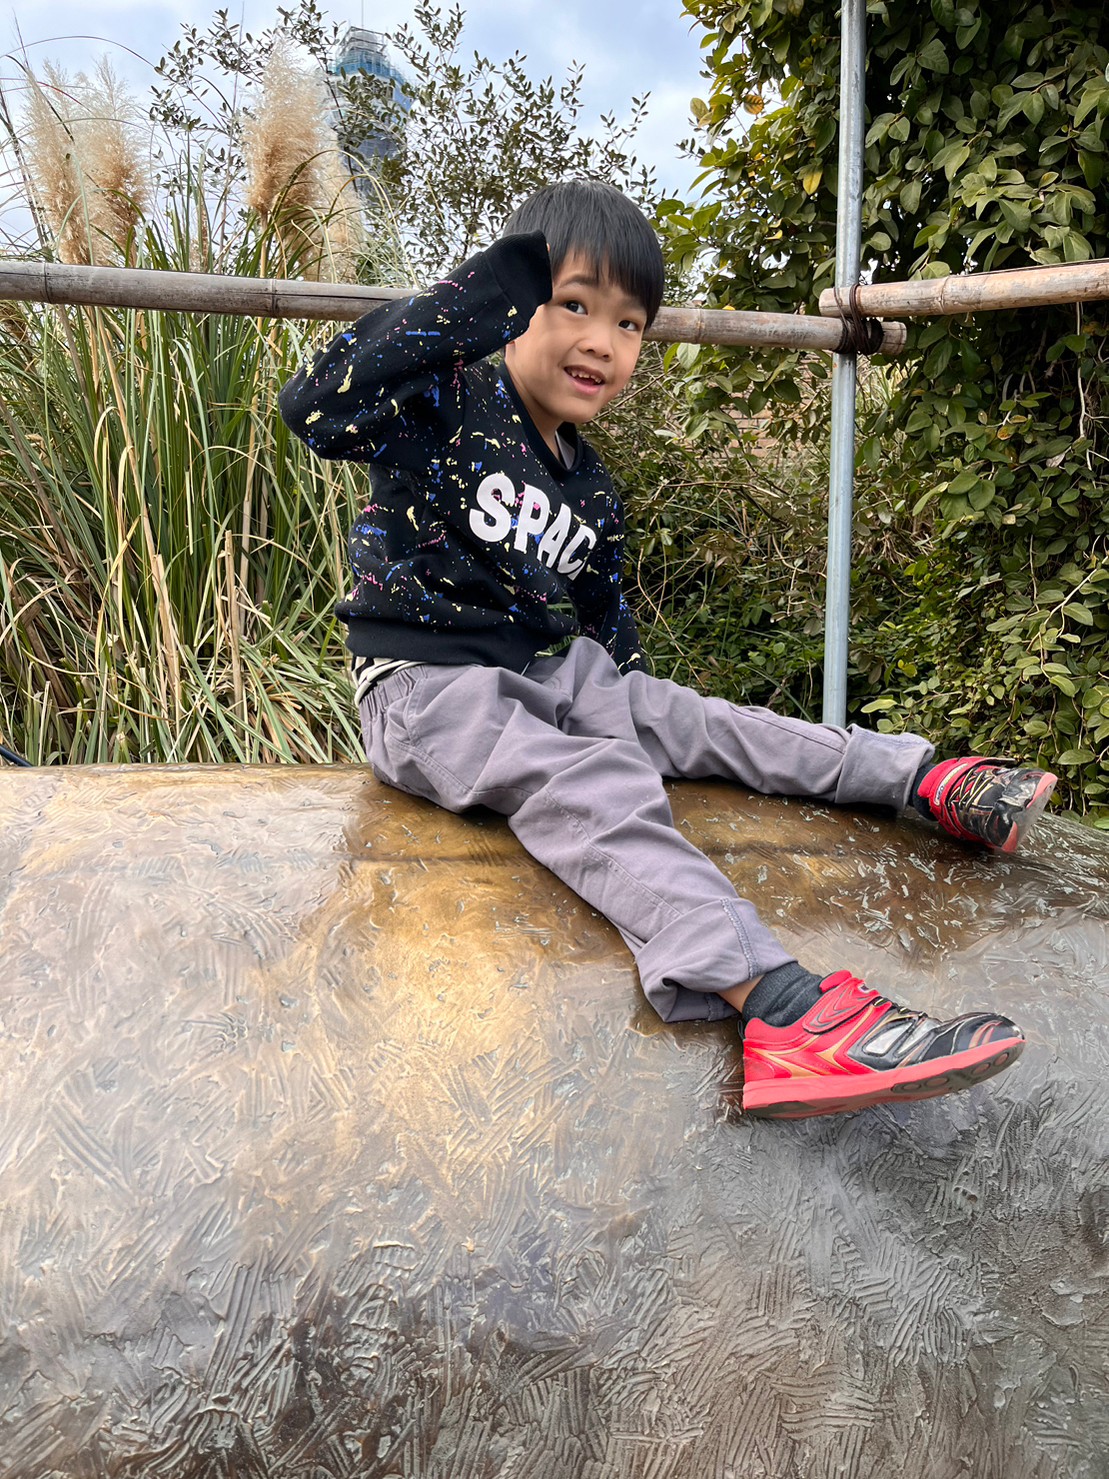 天王寺動物園の撮影スポットで写真を撮る小学生